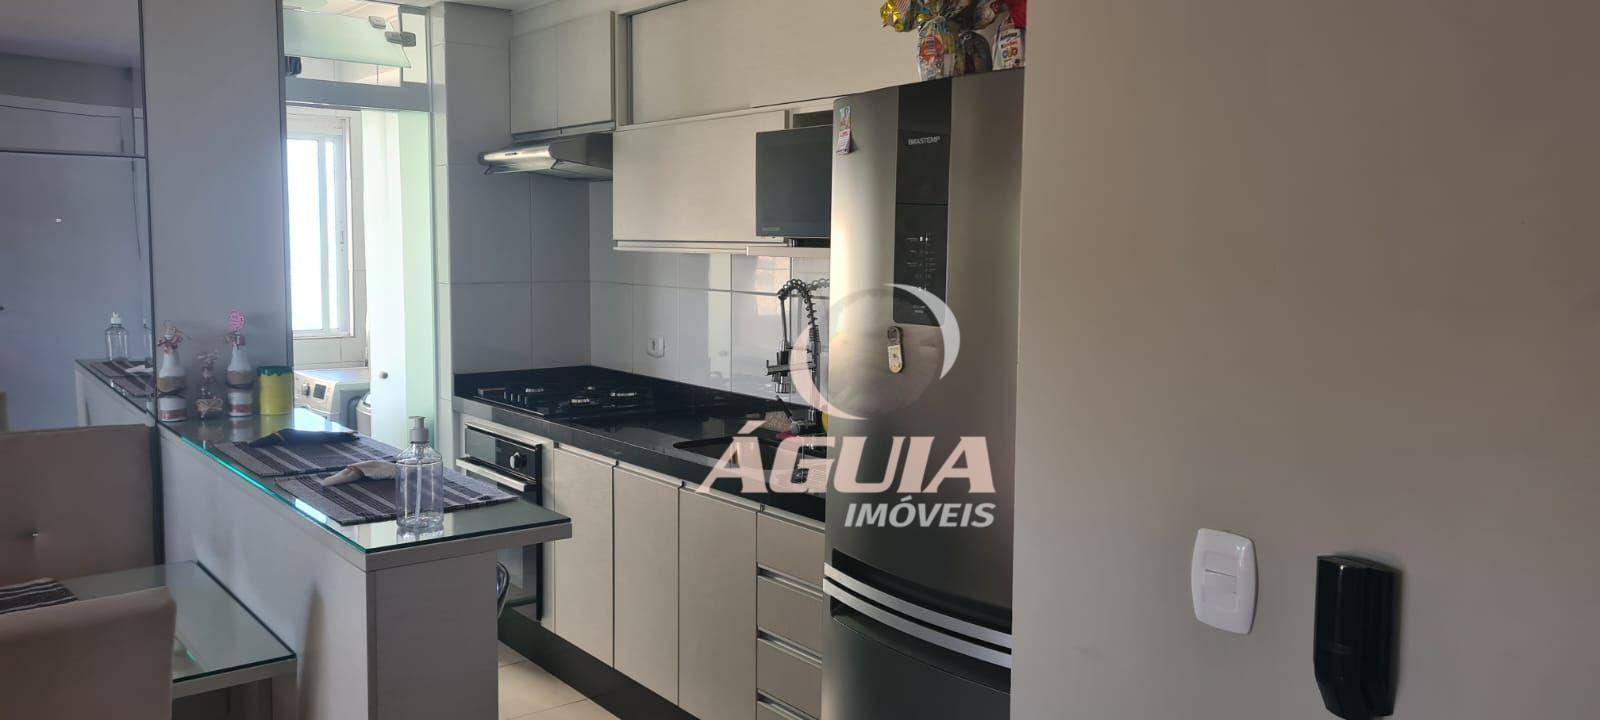 Apartamento com 2 dormitórios à venda, 58 m² por R$ 350.000,00 - Vila Falchi - Mauá/SP